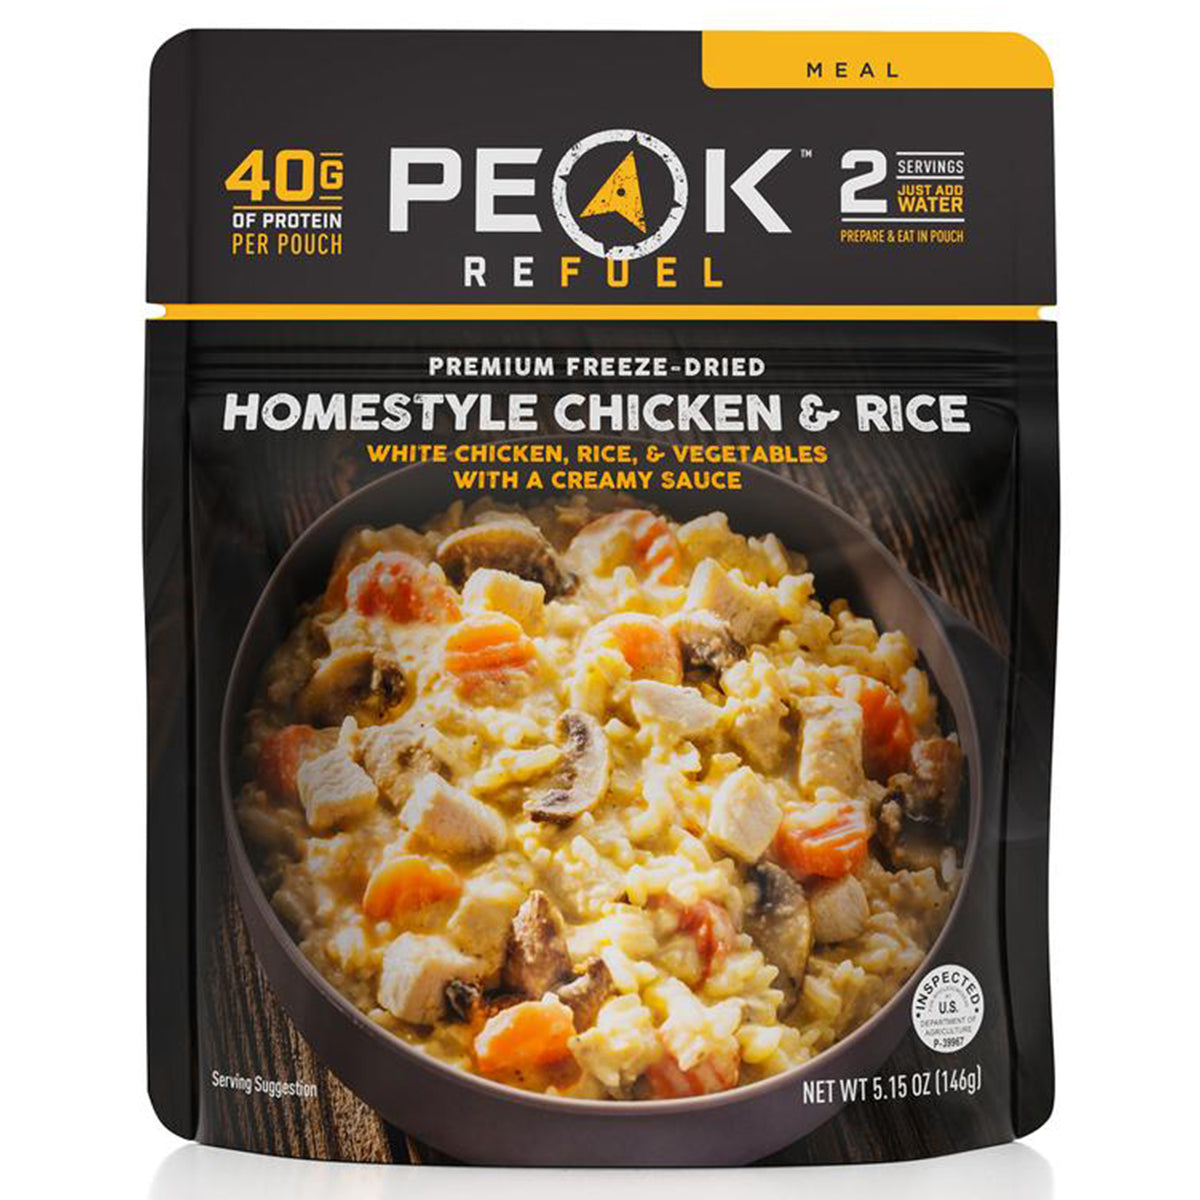 Peak Refuel Homestyle Chicken & Rice in Peak Refuel Homestyle Chicken & Rice by Peak Refuel | Camping - goHUNT Shop by GOHUNT | Peak Refuel - GOHUNT Shop